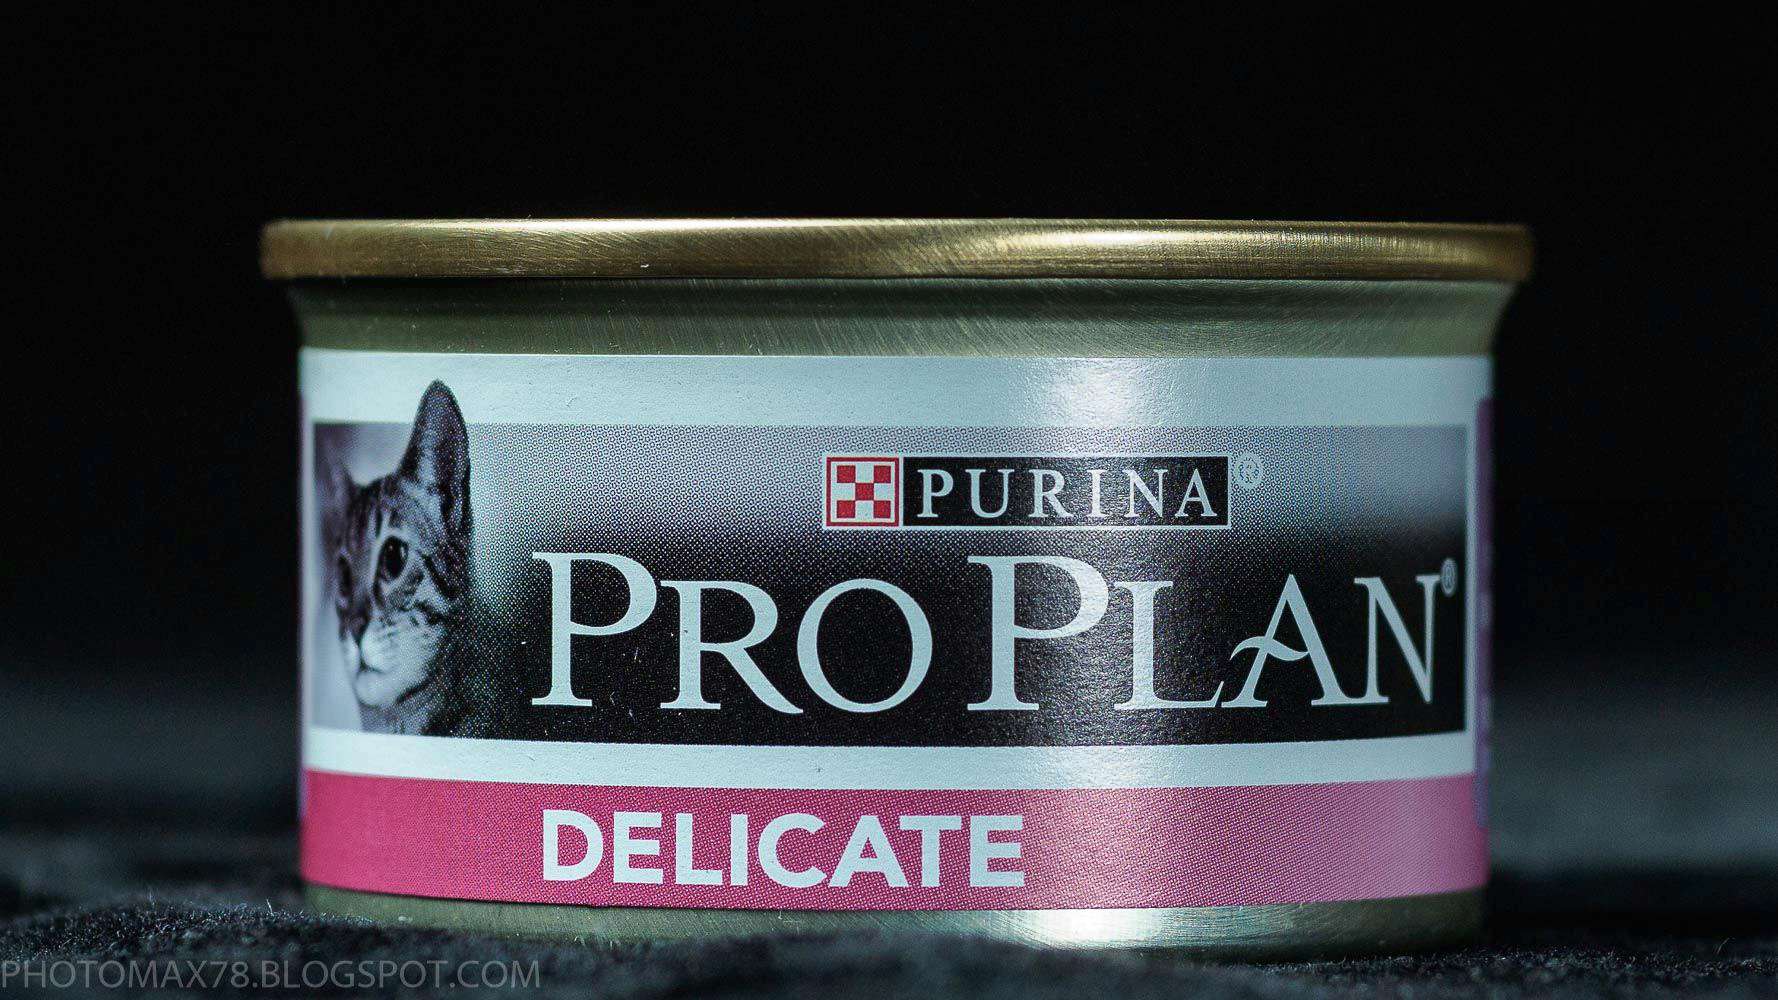 Purina pro plan индейка. Консервы Purina Pro Plan delicate. Консервы для кошек Pro Plan delicate, индейка, 85г. Pro Plan delicate паштет. Pro Plan delicate для кошек консервы.